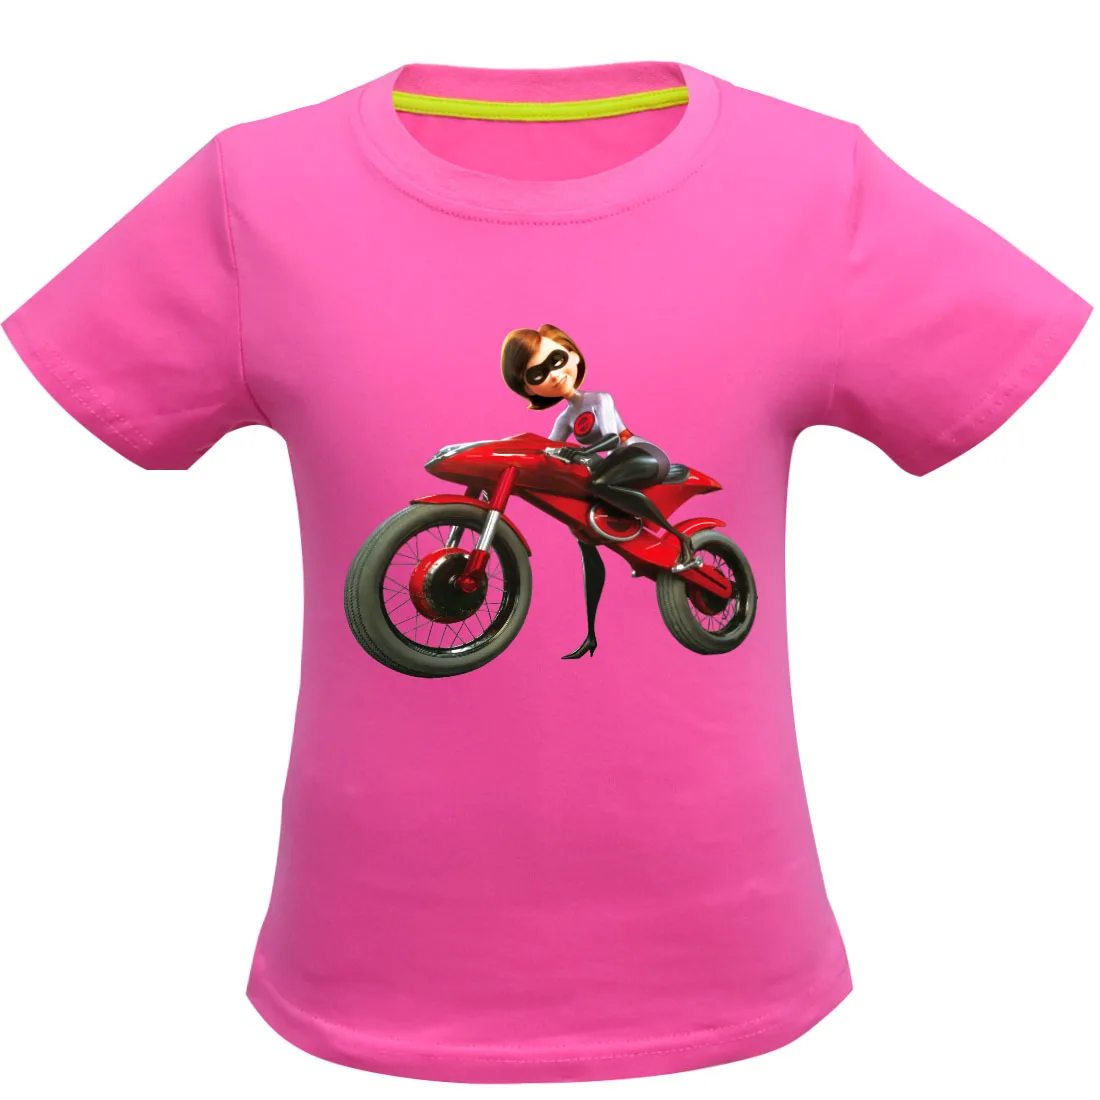 Одежда для маленьких девочек удобные Летние футболки Суперсемейка 2 из топа с рисунком футболка для мальчиков детская одежда